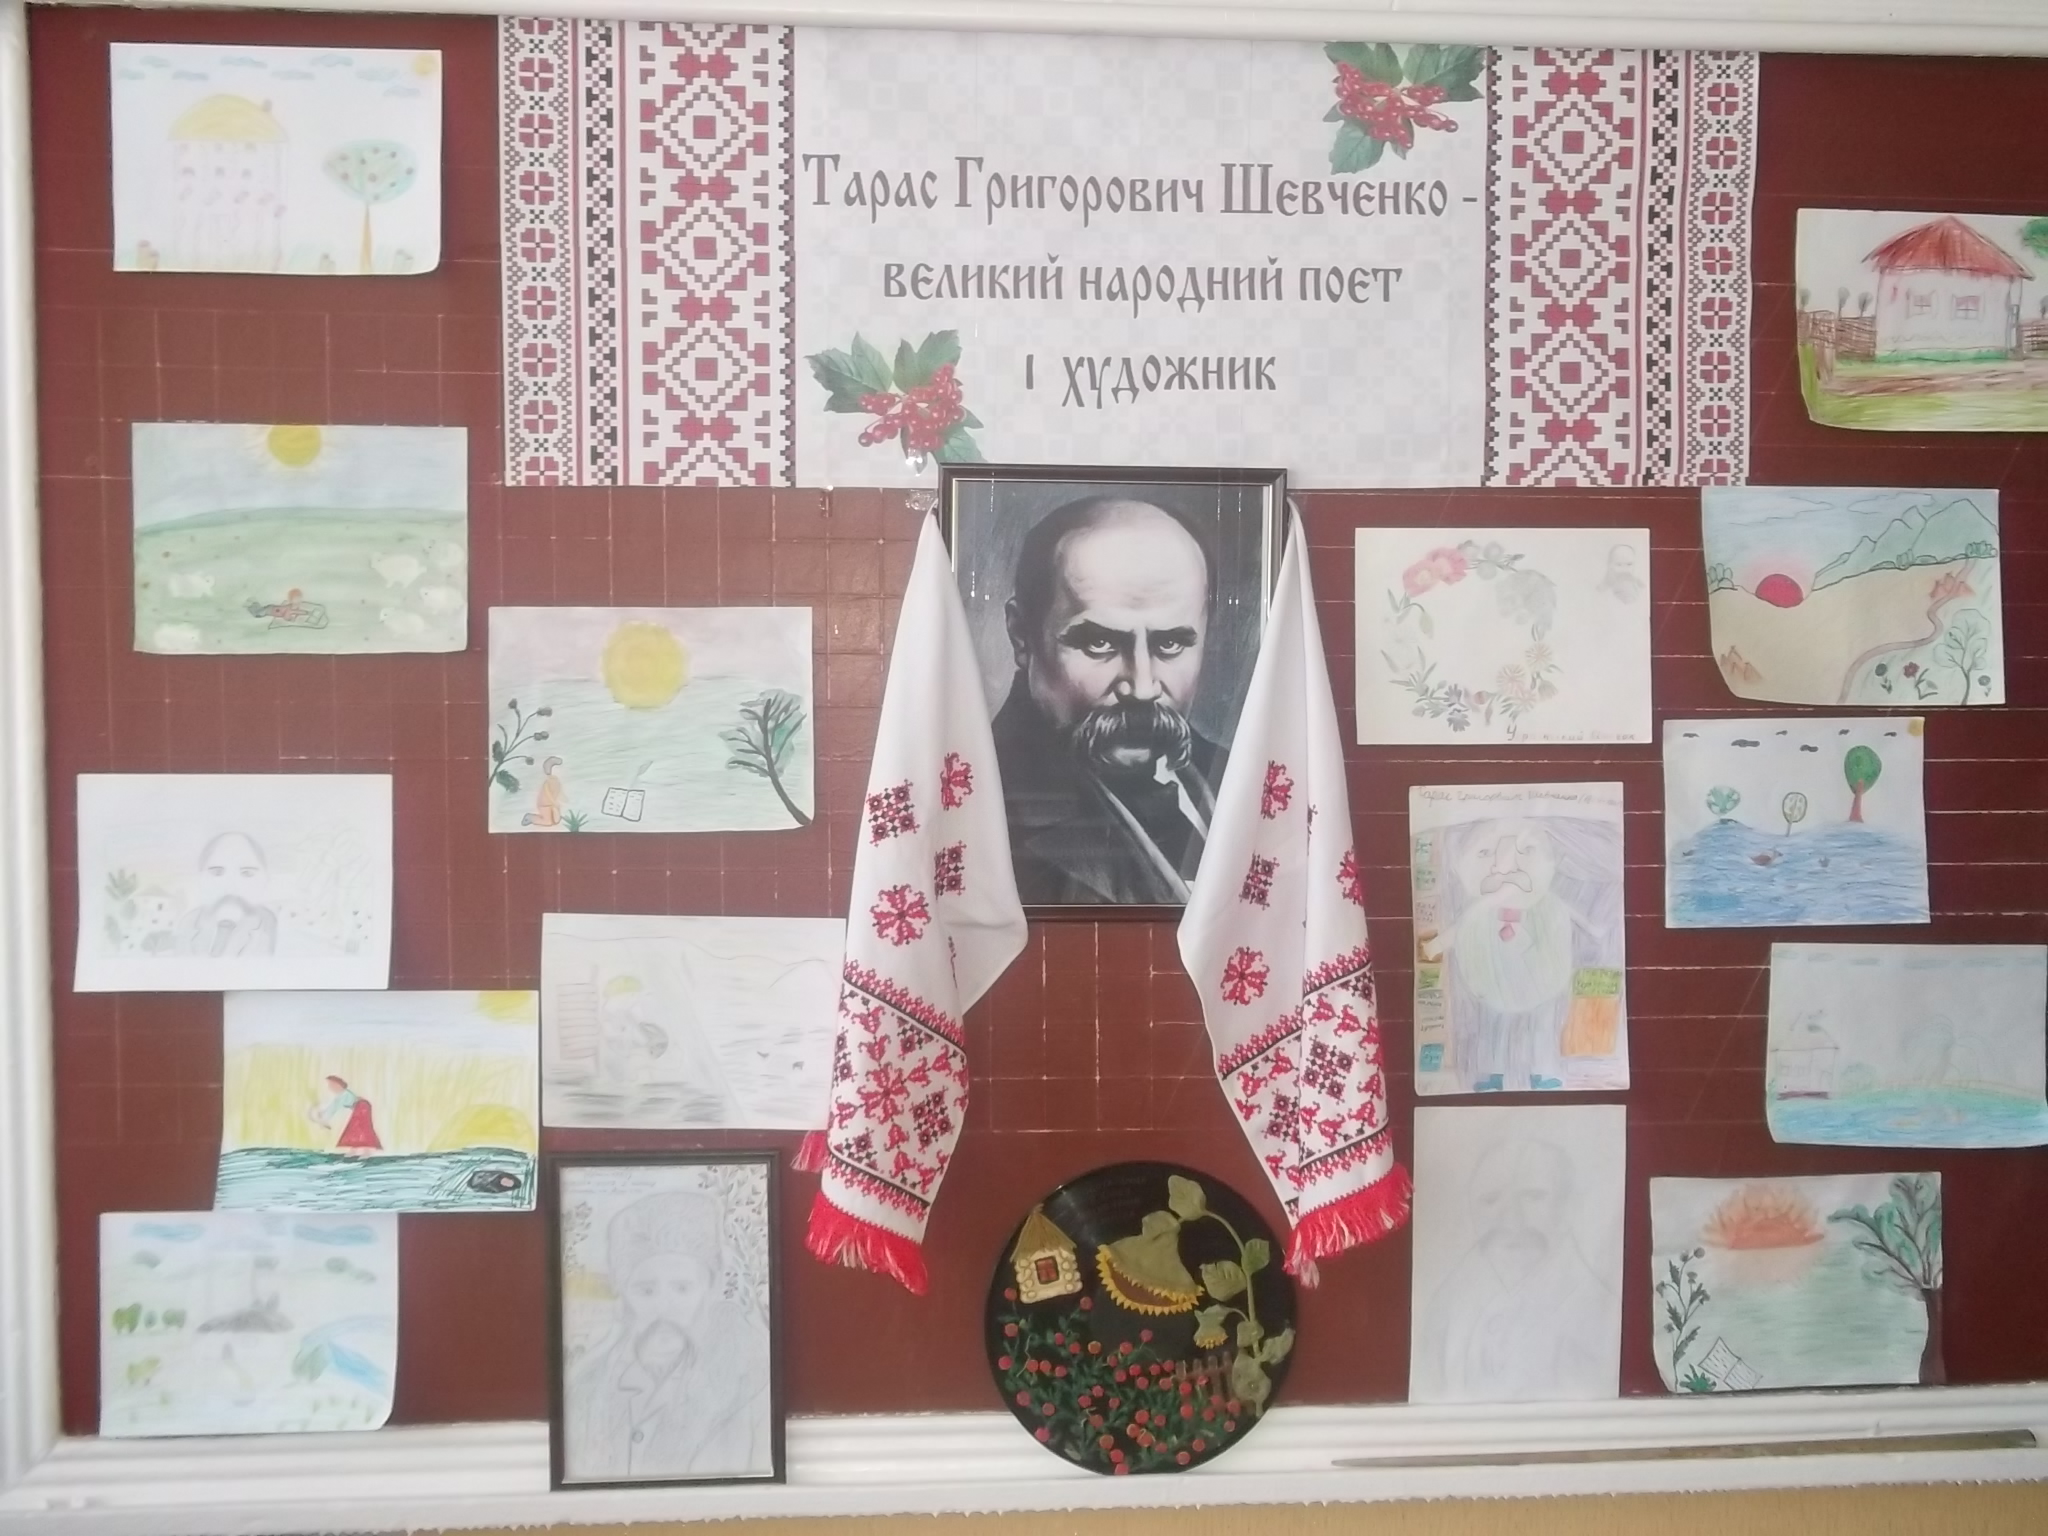 Конспект урока на тему: «Тарас Шевченко - великий народный поэт и художник»